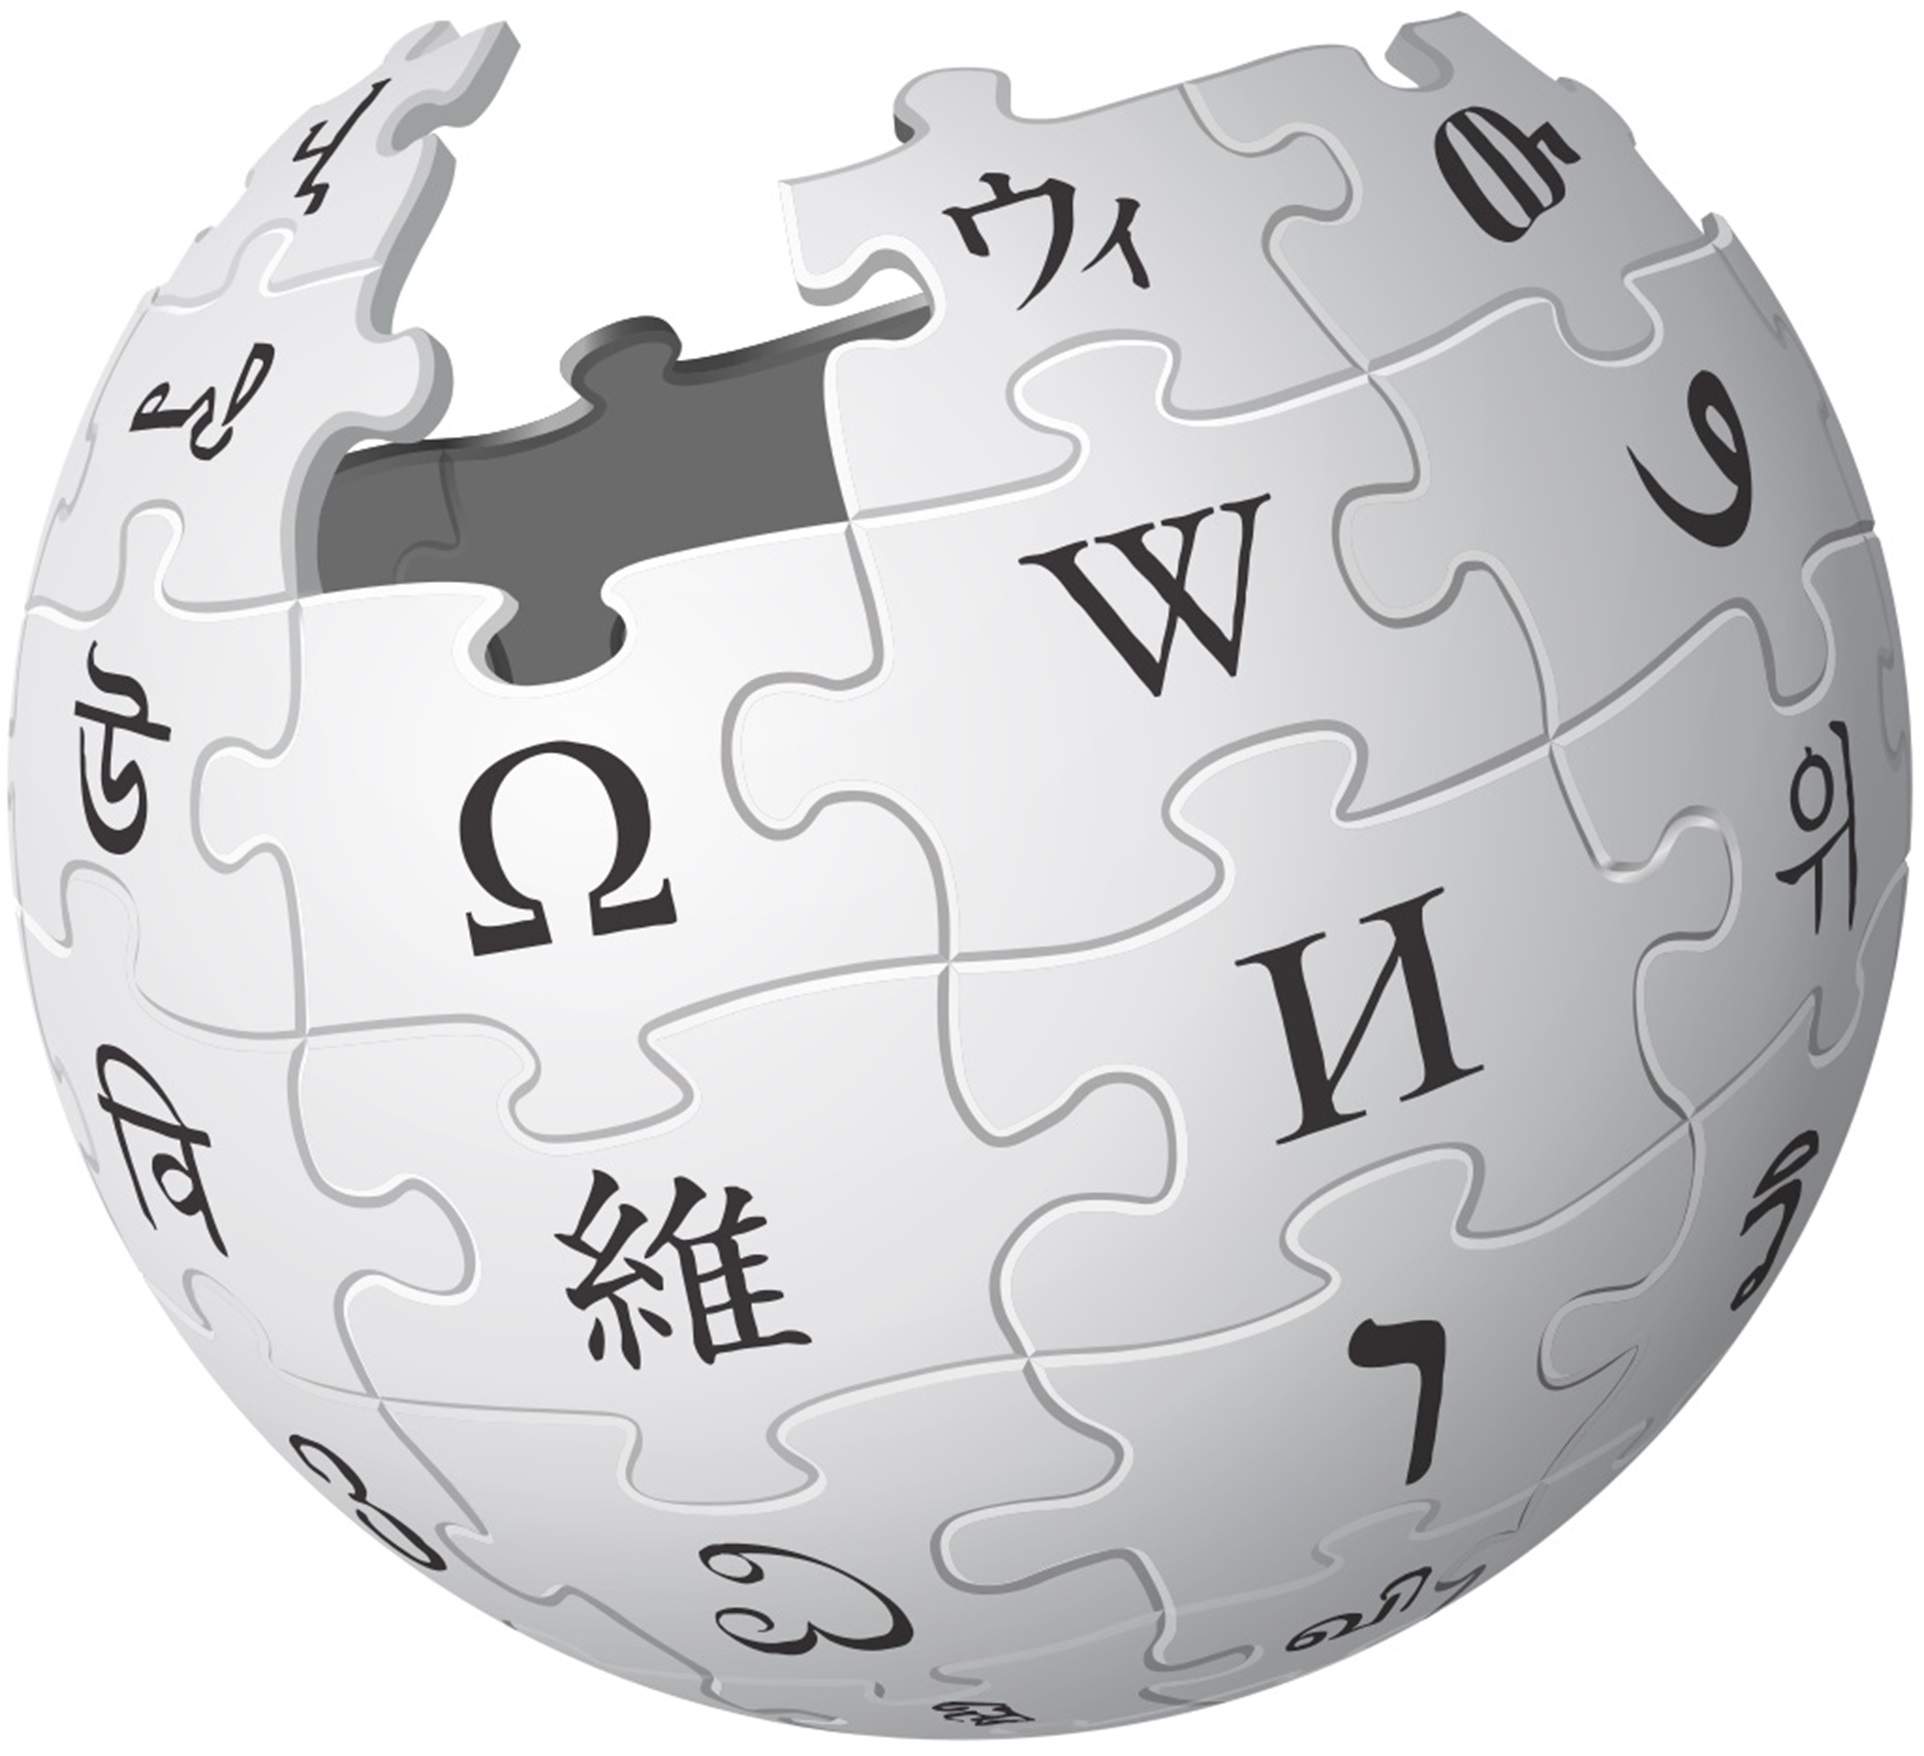 La Viquipèdia, al top 5 del rànquing dels 10.000 articles que tota enciclopèdia hauria de tenir